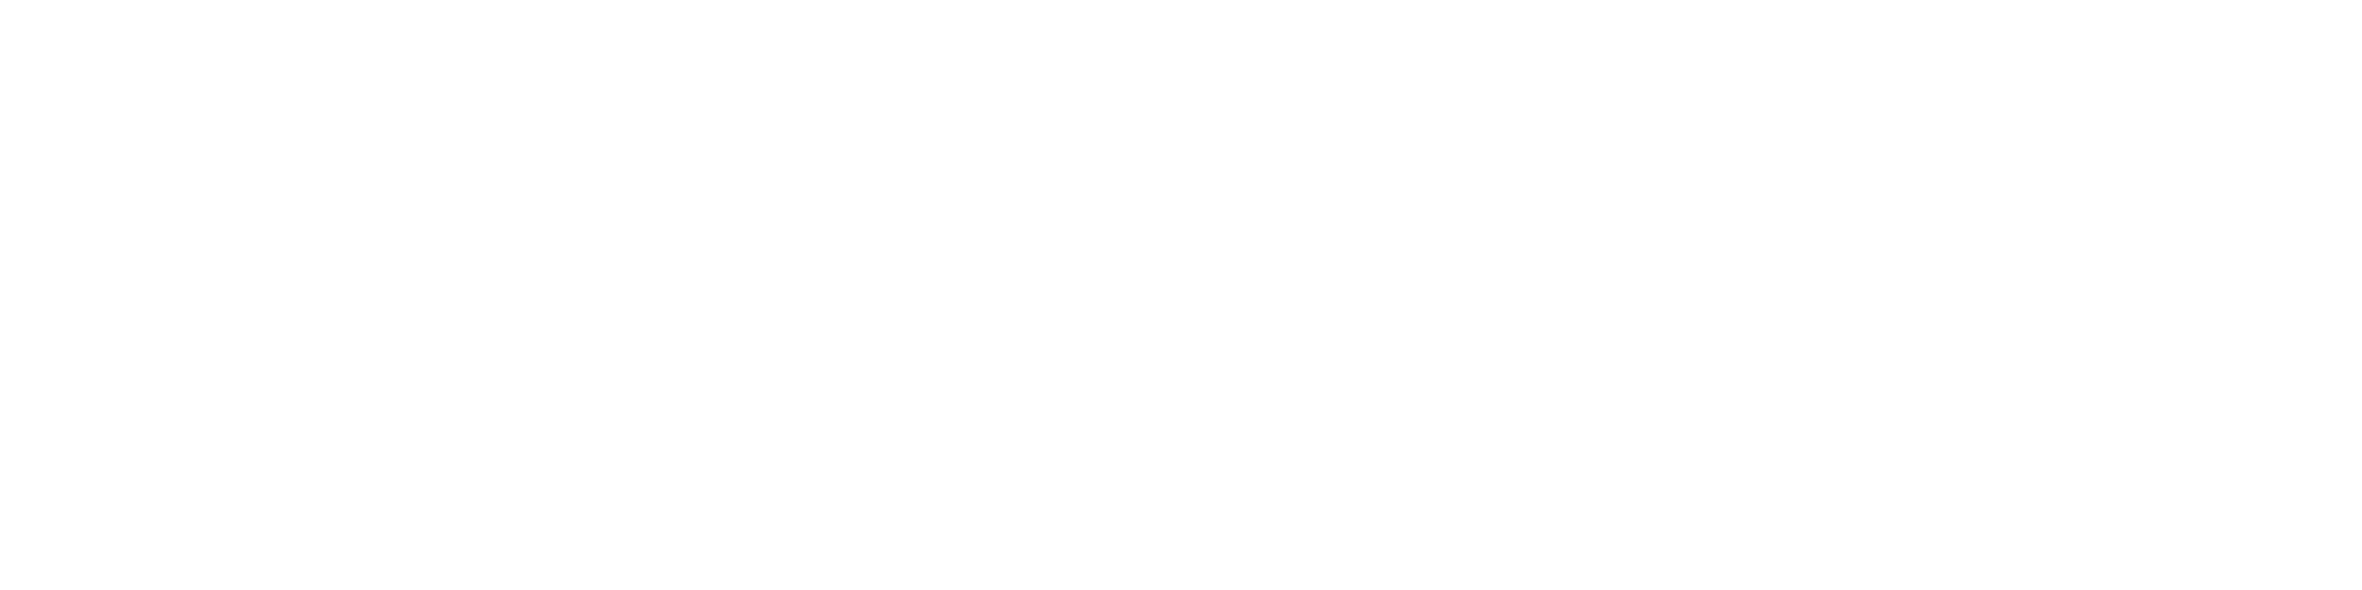 PGH Biobank